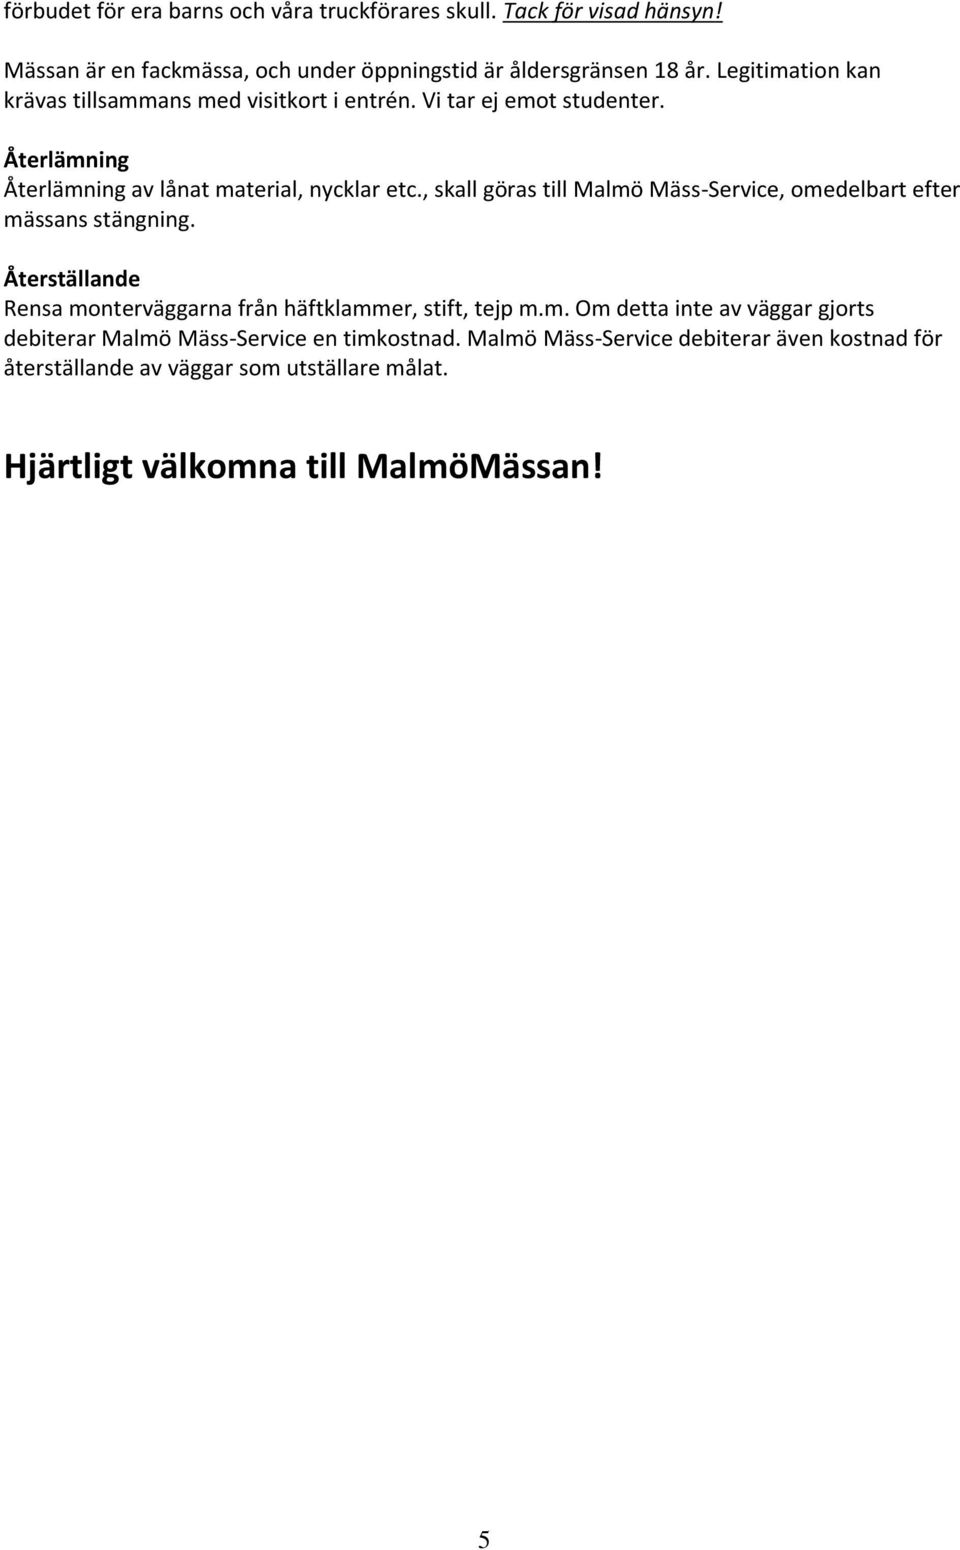 , skall göras till Malmö Mäss-Service, omedelbart efter mässans stängning. Återställande Rensa monterväggarna från häftklammer, stift, tejp m.m. Om detta inte av väggar gjorts debiterar Malmö Mäss-Service en timkostnad.